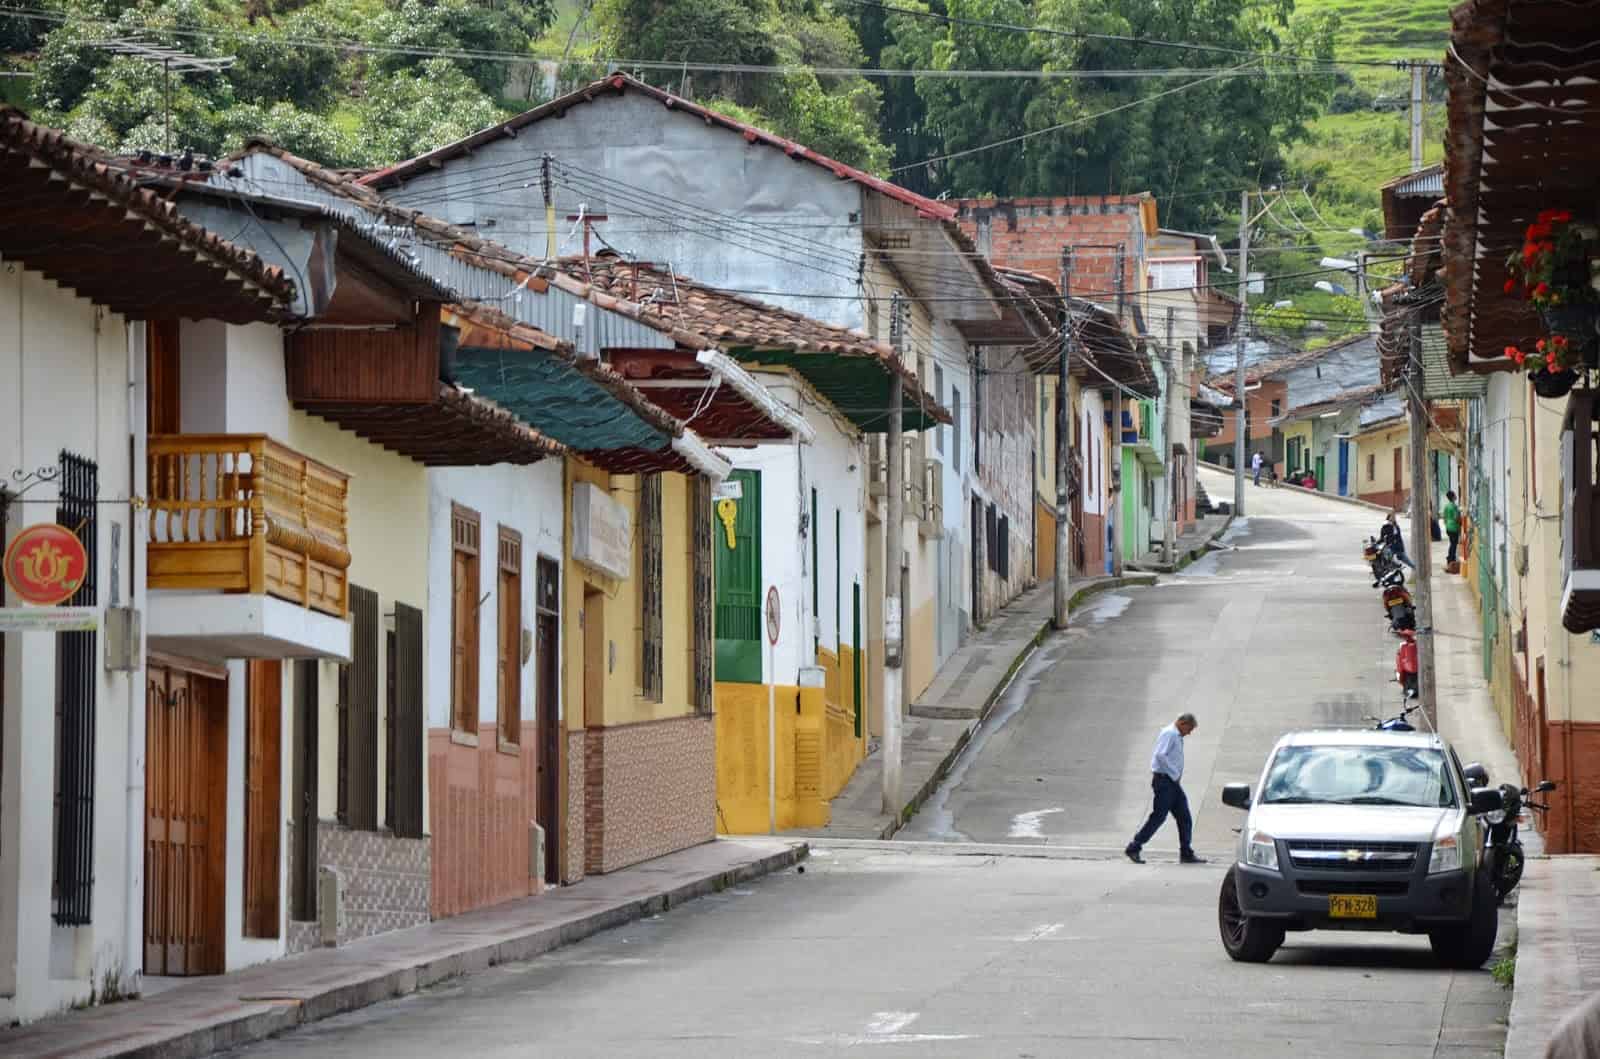 A street in Riosucio, Caldas, Columbia